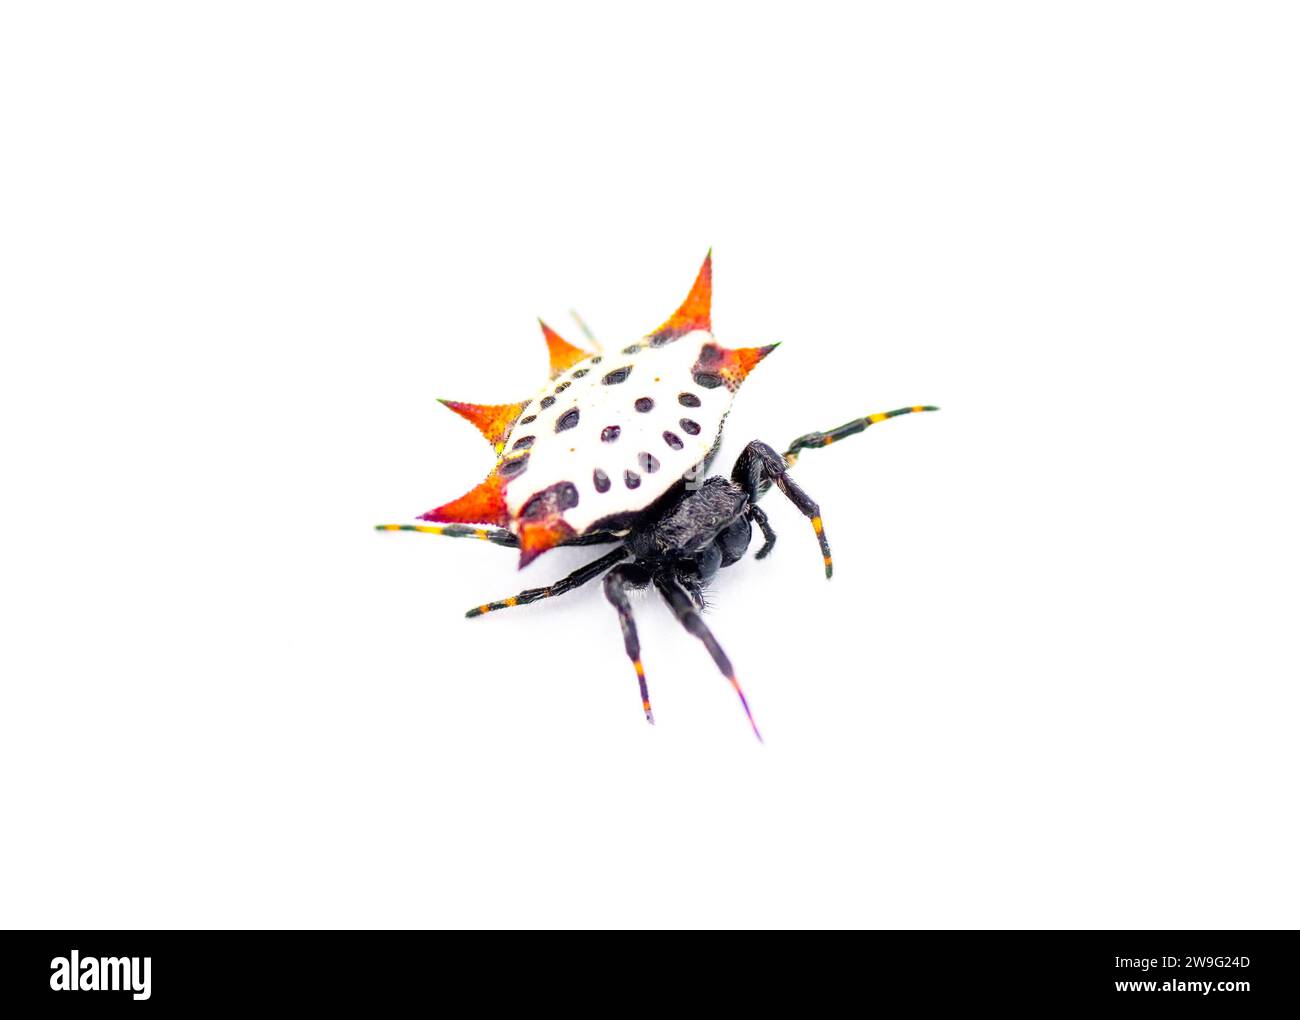 Spiny back Orb Weaver Spinnen - Gasteracantha cancriformis - alias Krabben- oder Drachenspinne kriechen rechts Ansicht isoliert auf weißem Hintergrund Stockfoto